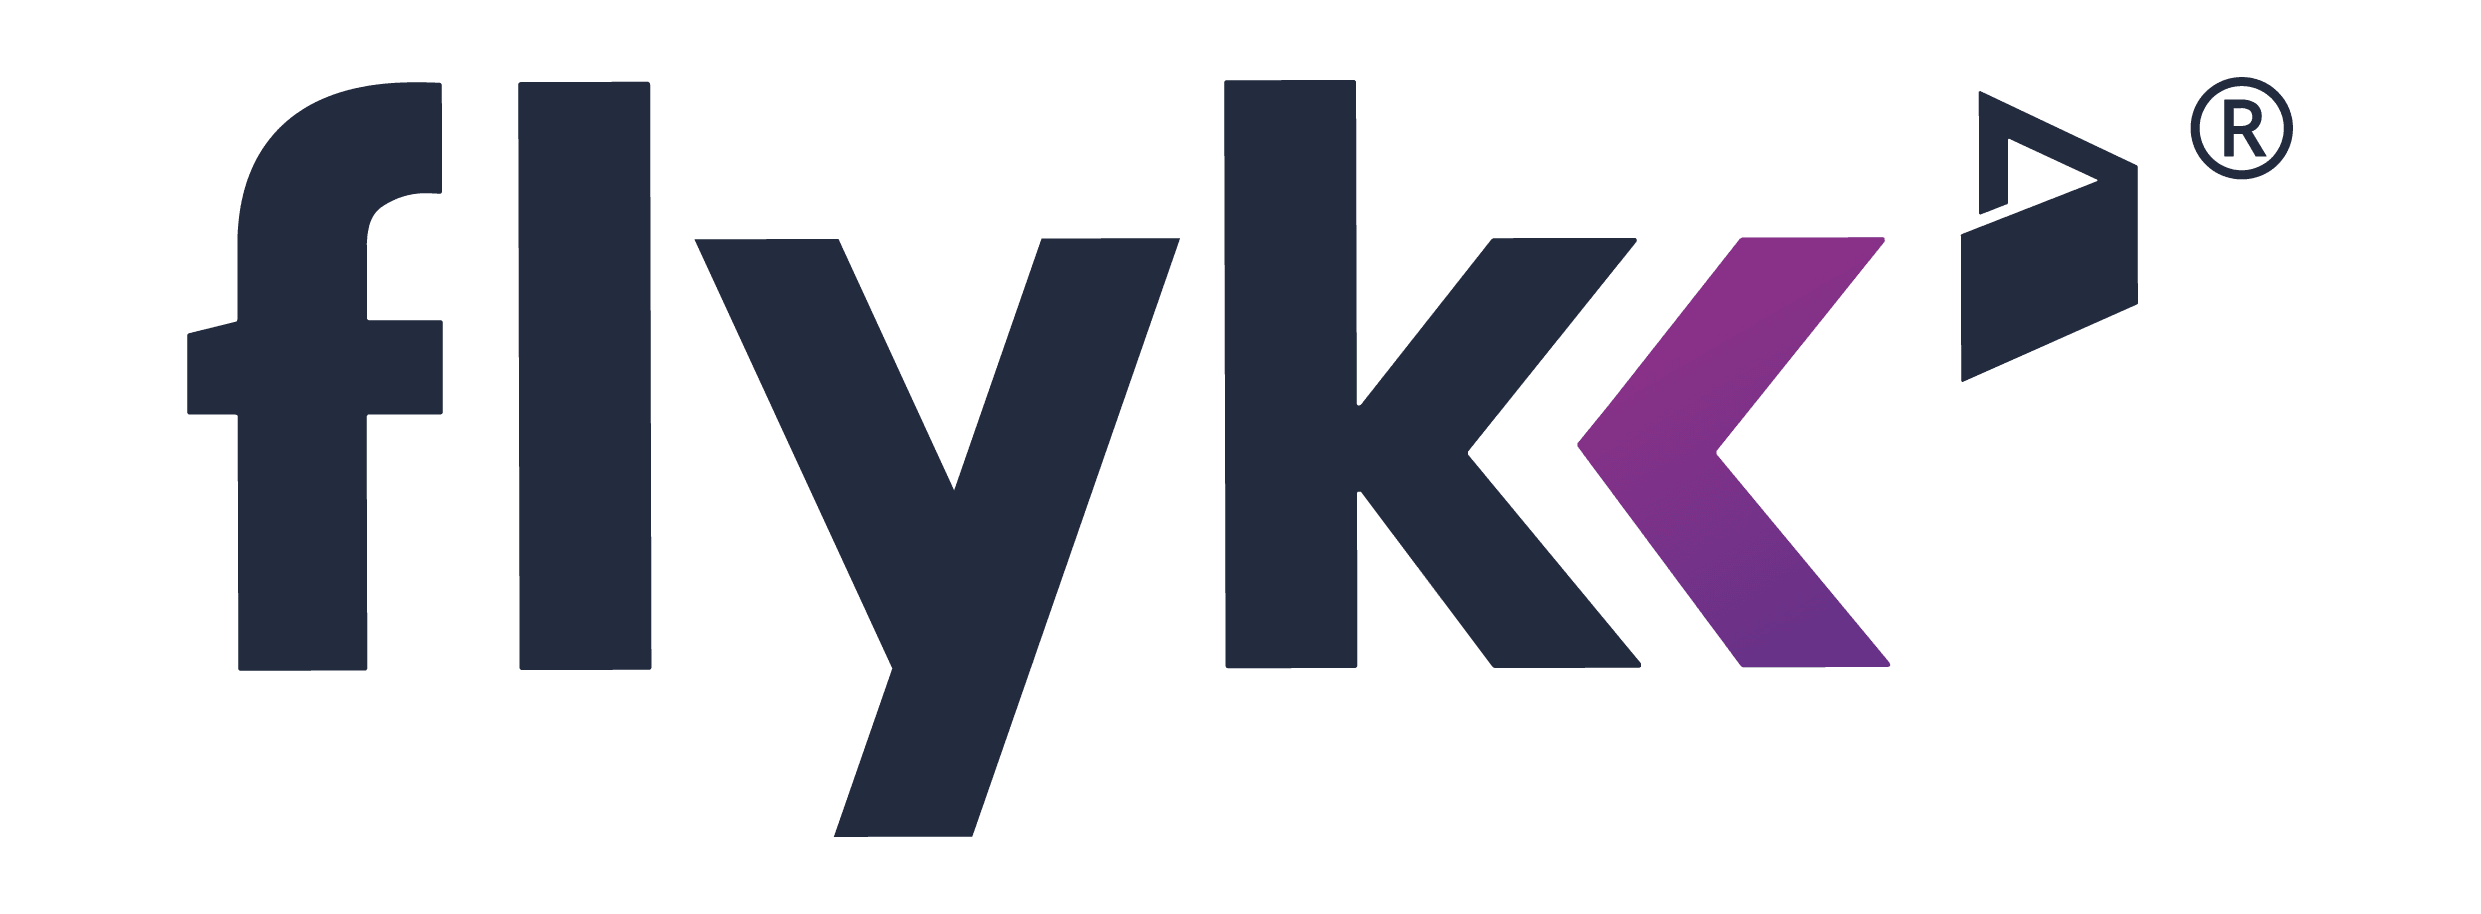 Najbolja online kasina koja prihvaćaju Flykk